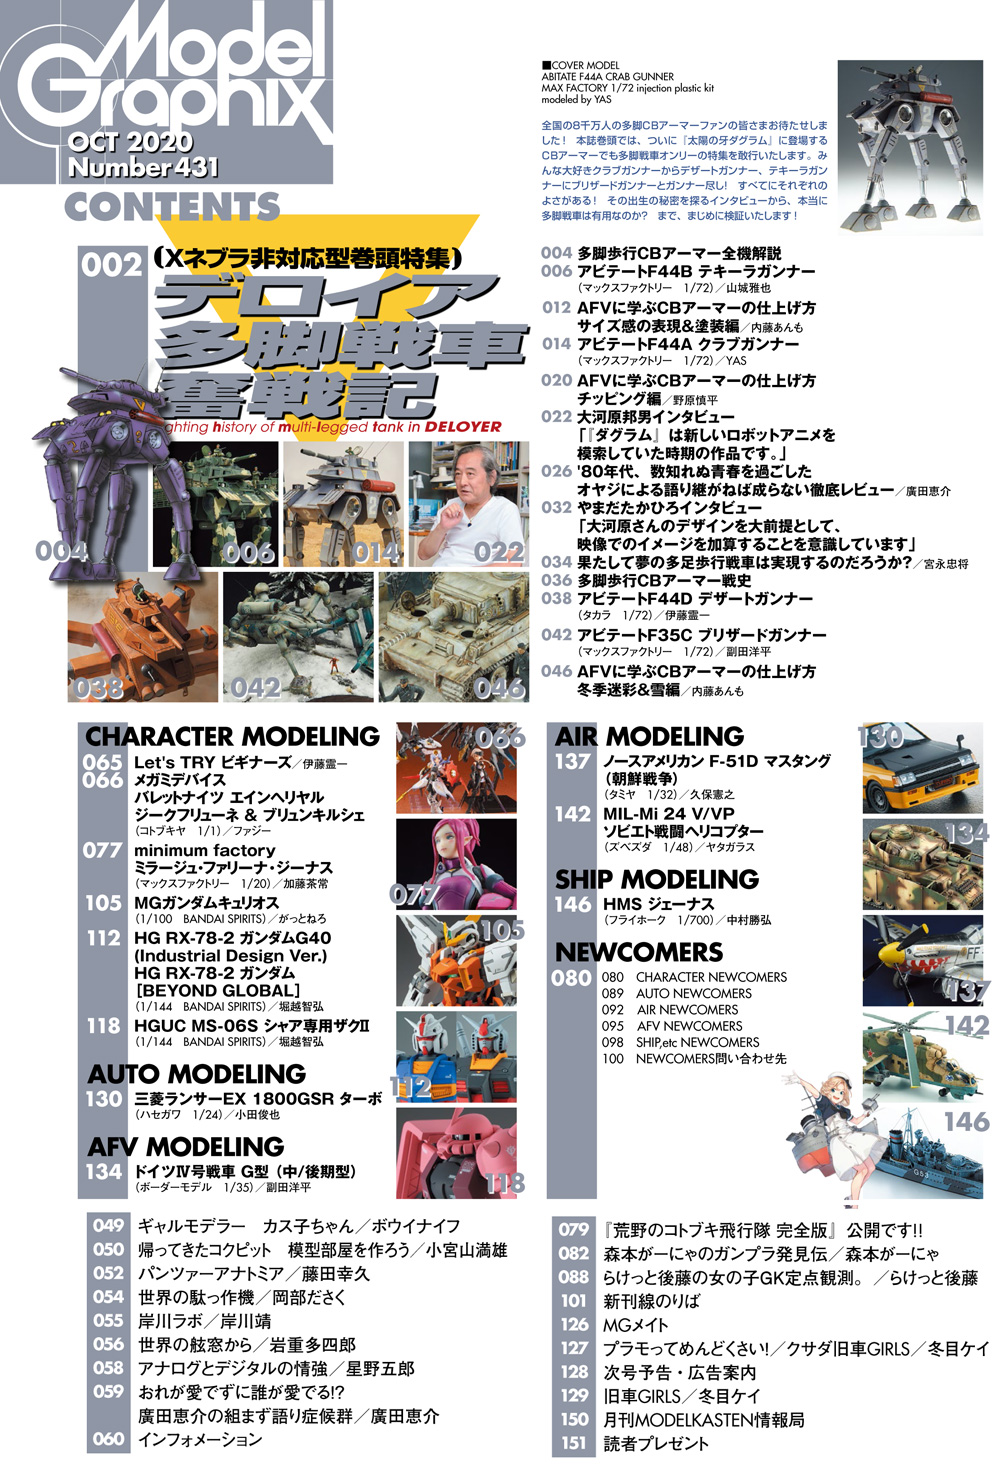 モデルグラフィックス 2020年10月号 雑誌 (大日本絵画 月刊 モデルグラフィックス No.431) 商品画像_1